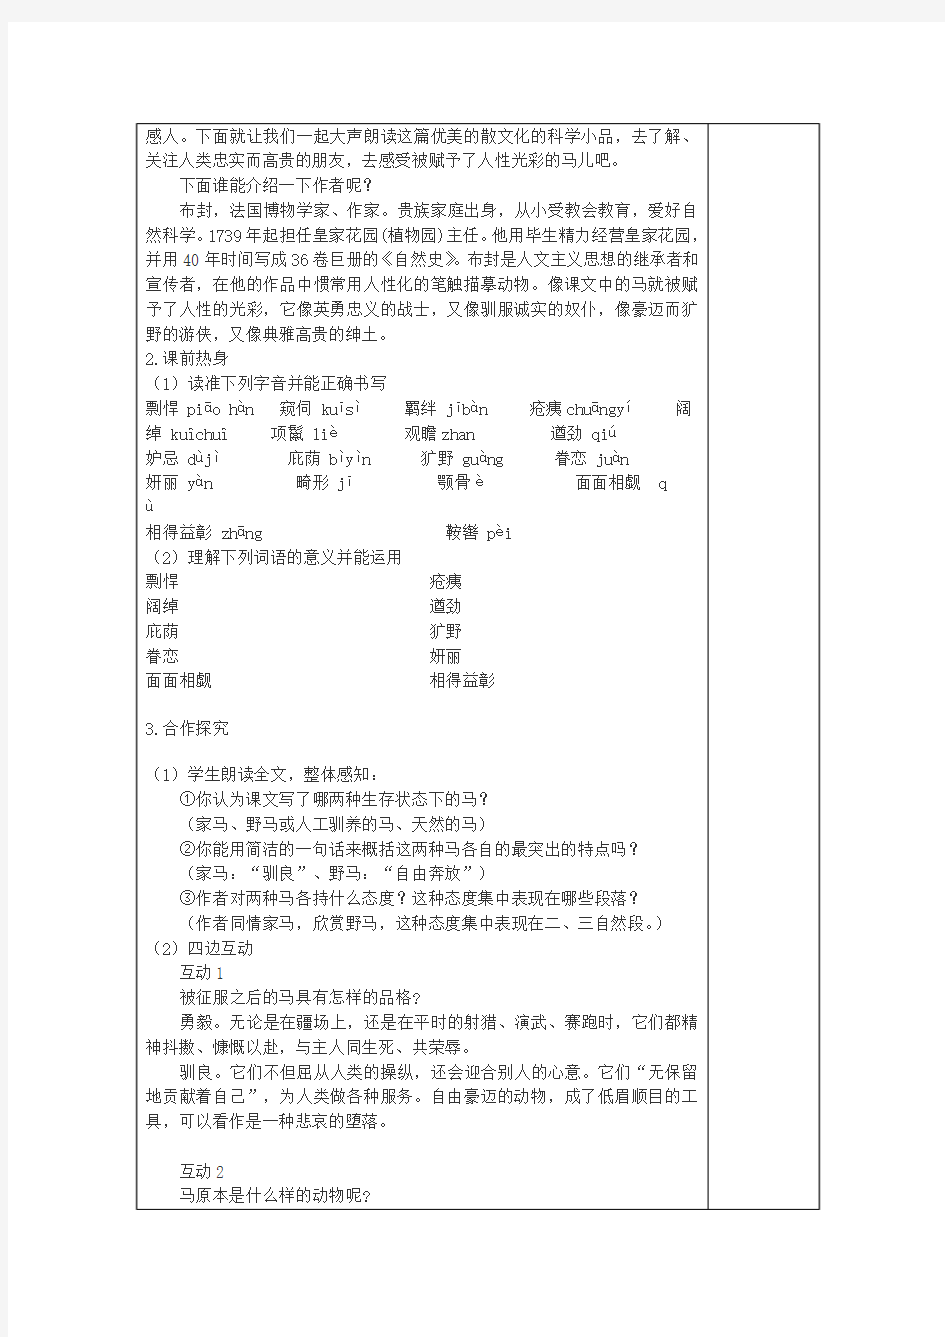 初中语文集体备课教案范例